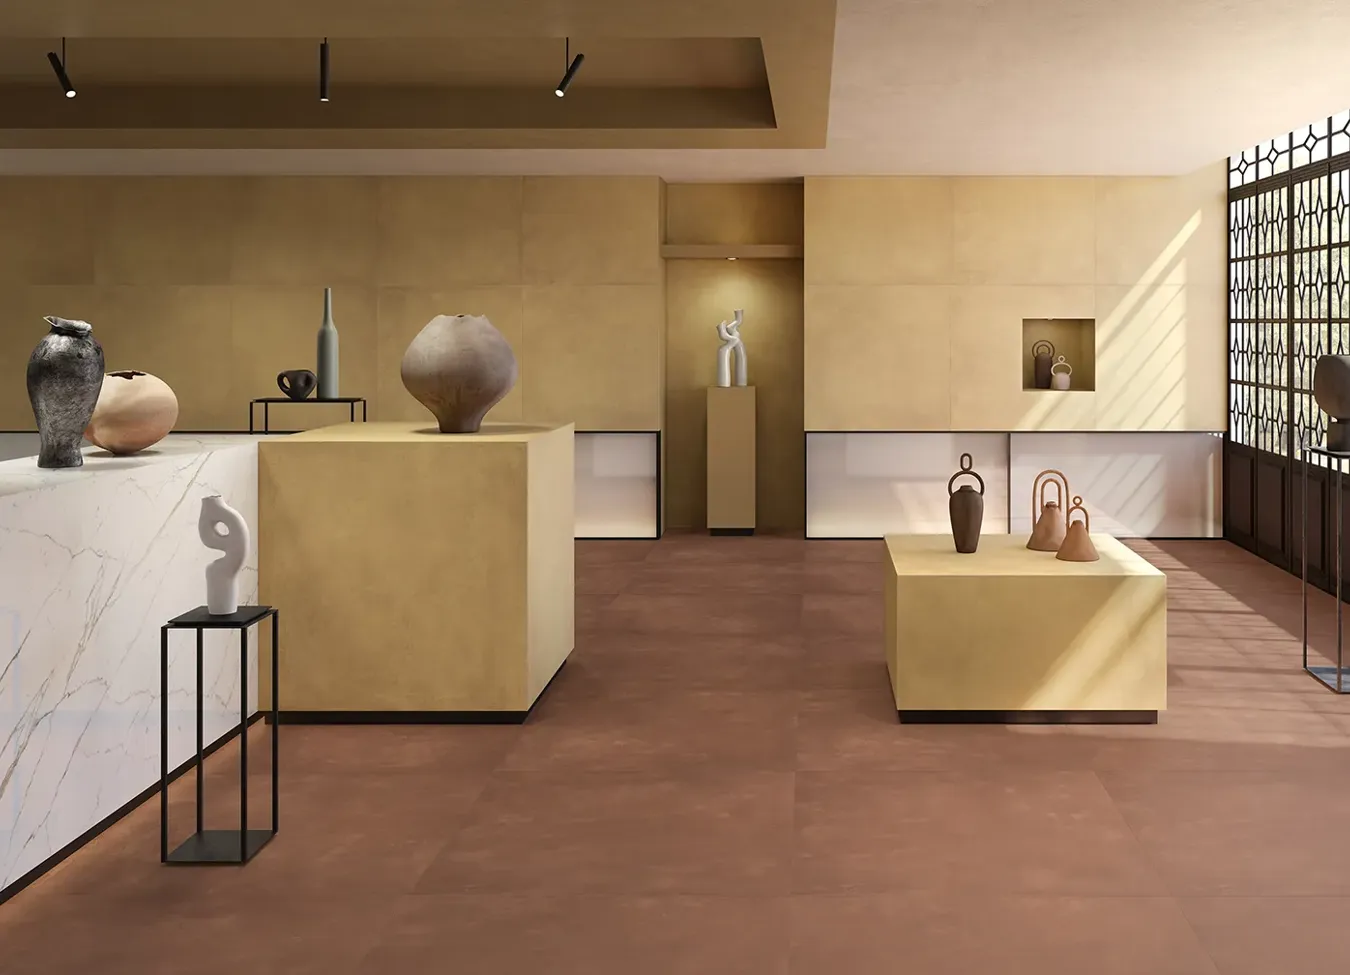 Kupfer-Metalloptik Fliesen in einem zeitgenössischen Kunstgalerie-Ambiente.